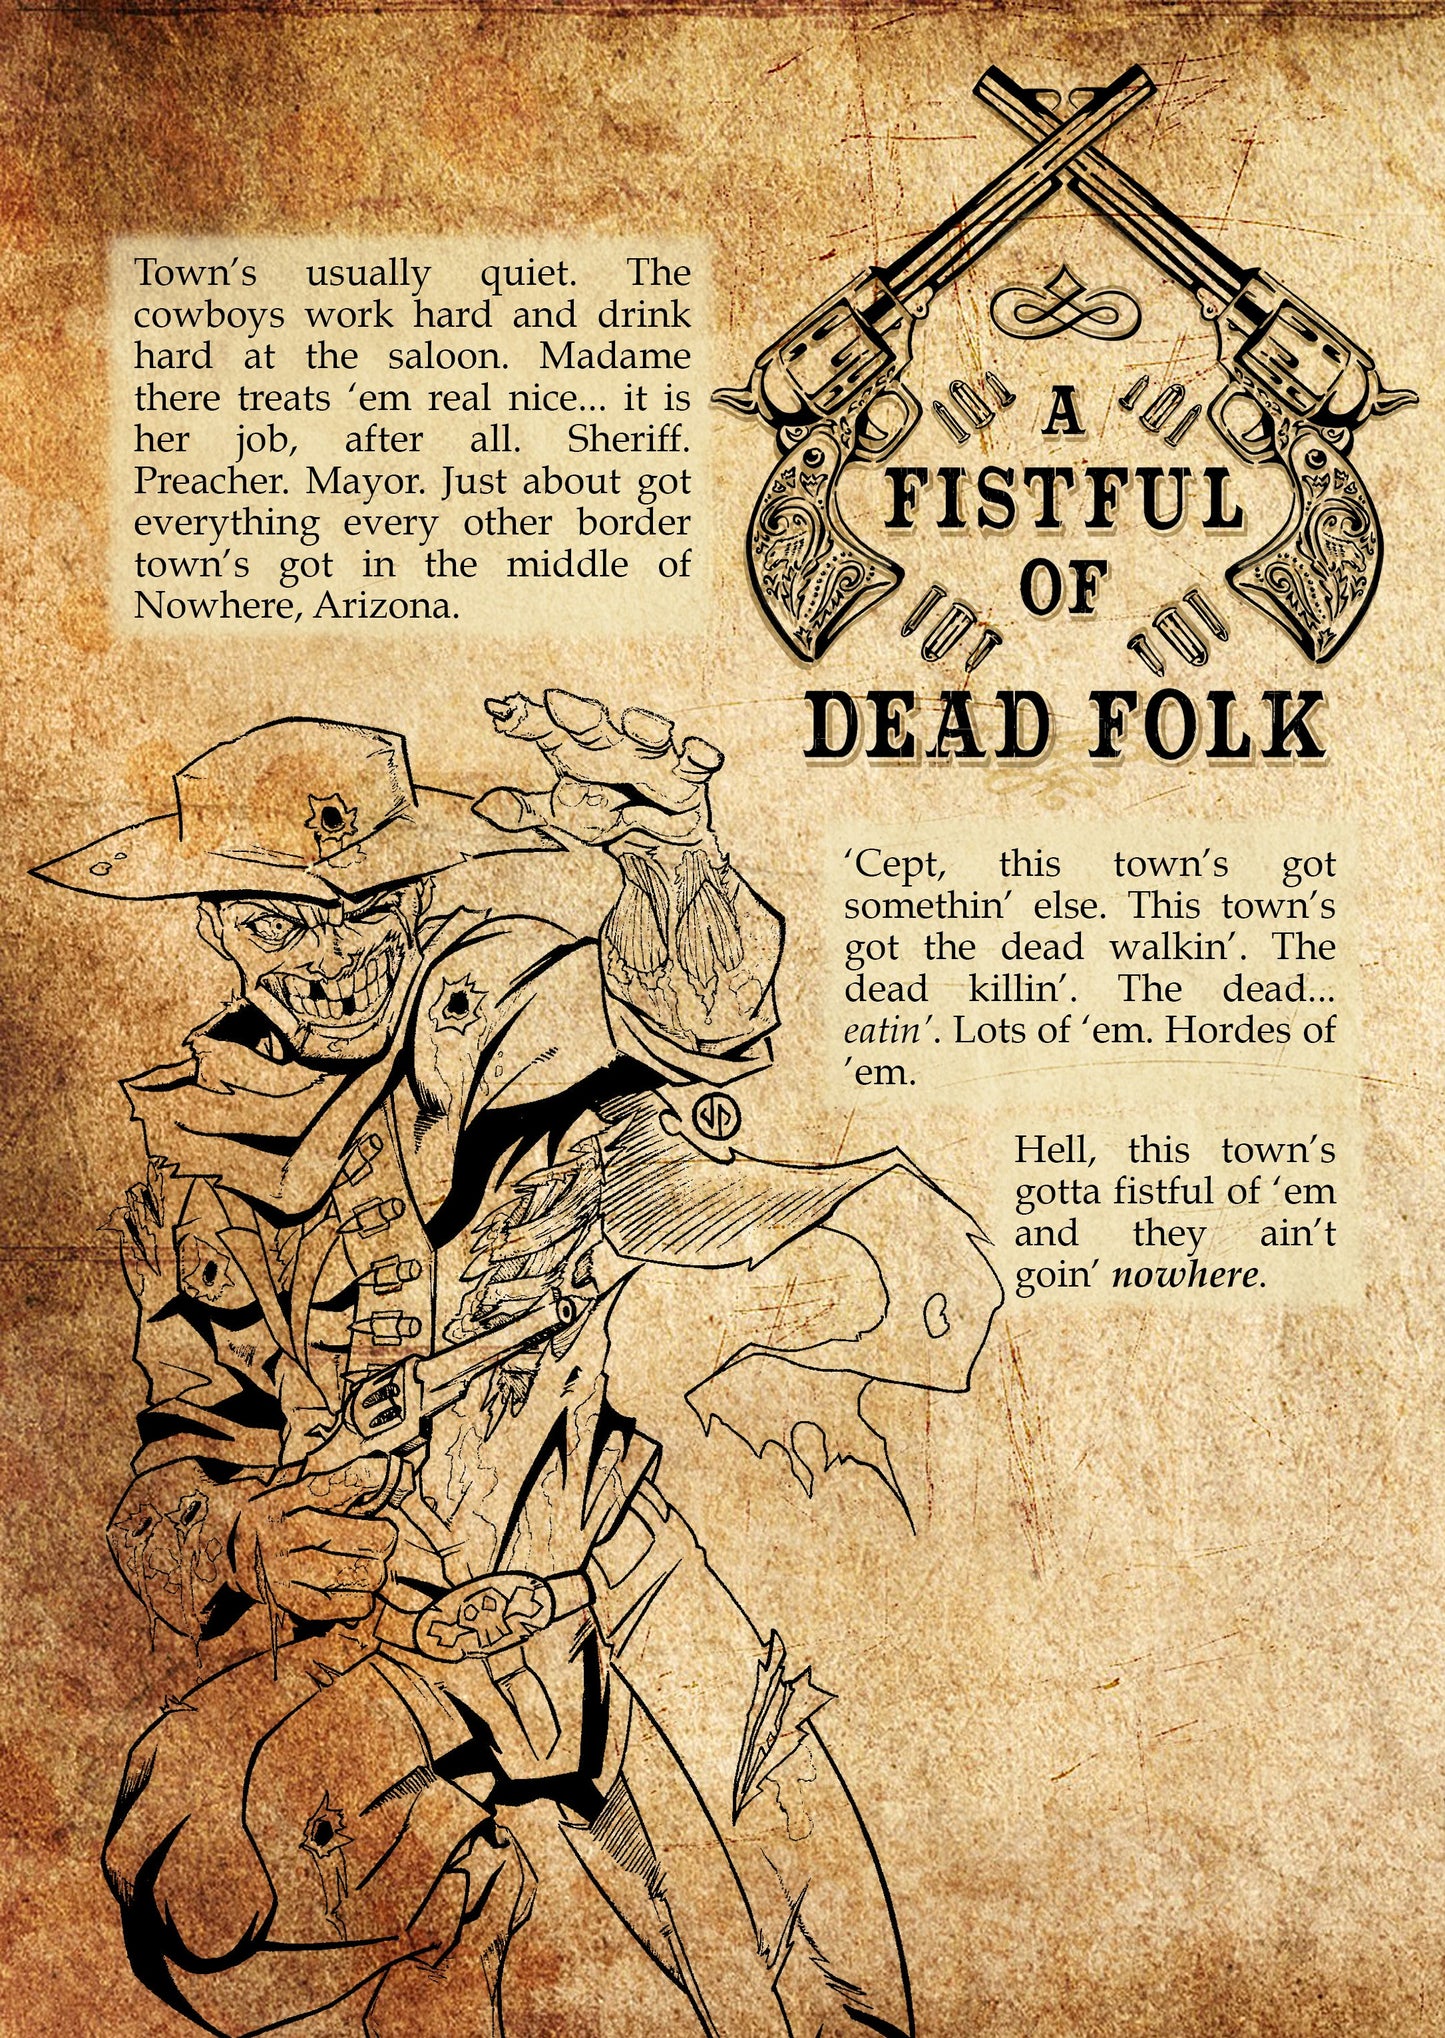 Fistful of Dead Folk, A